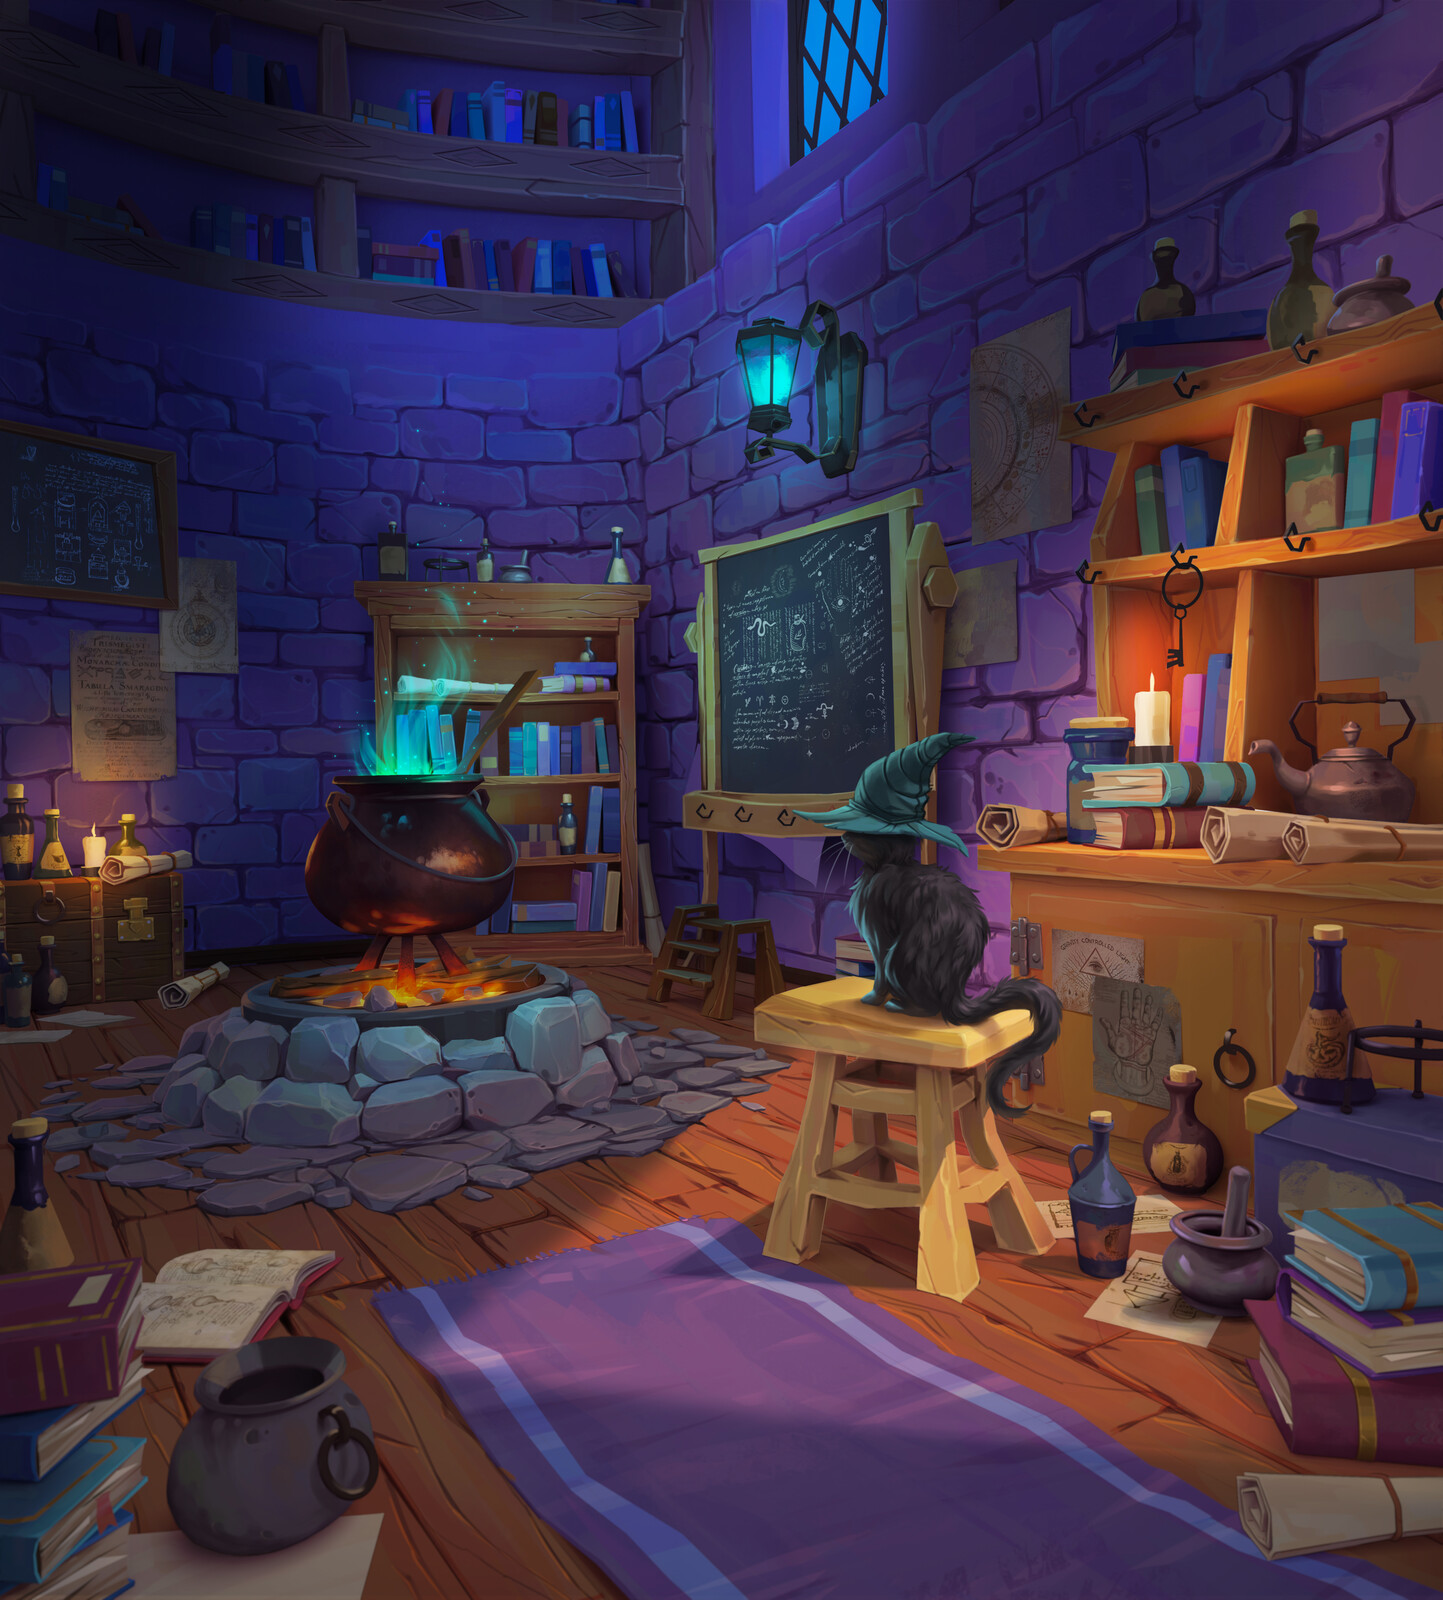 Sorcerer's Room